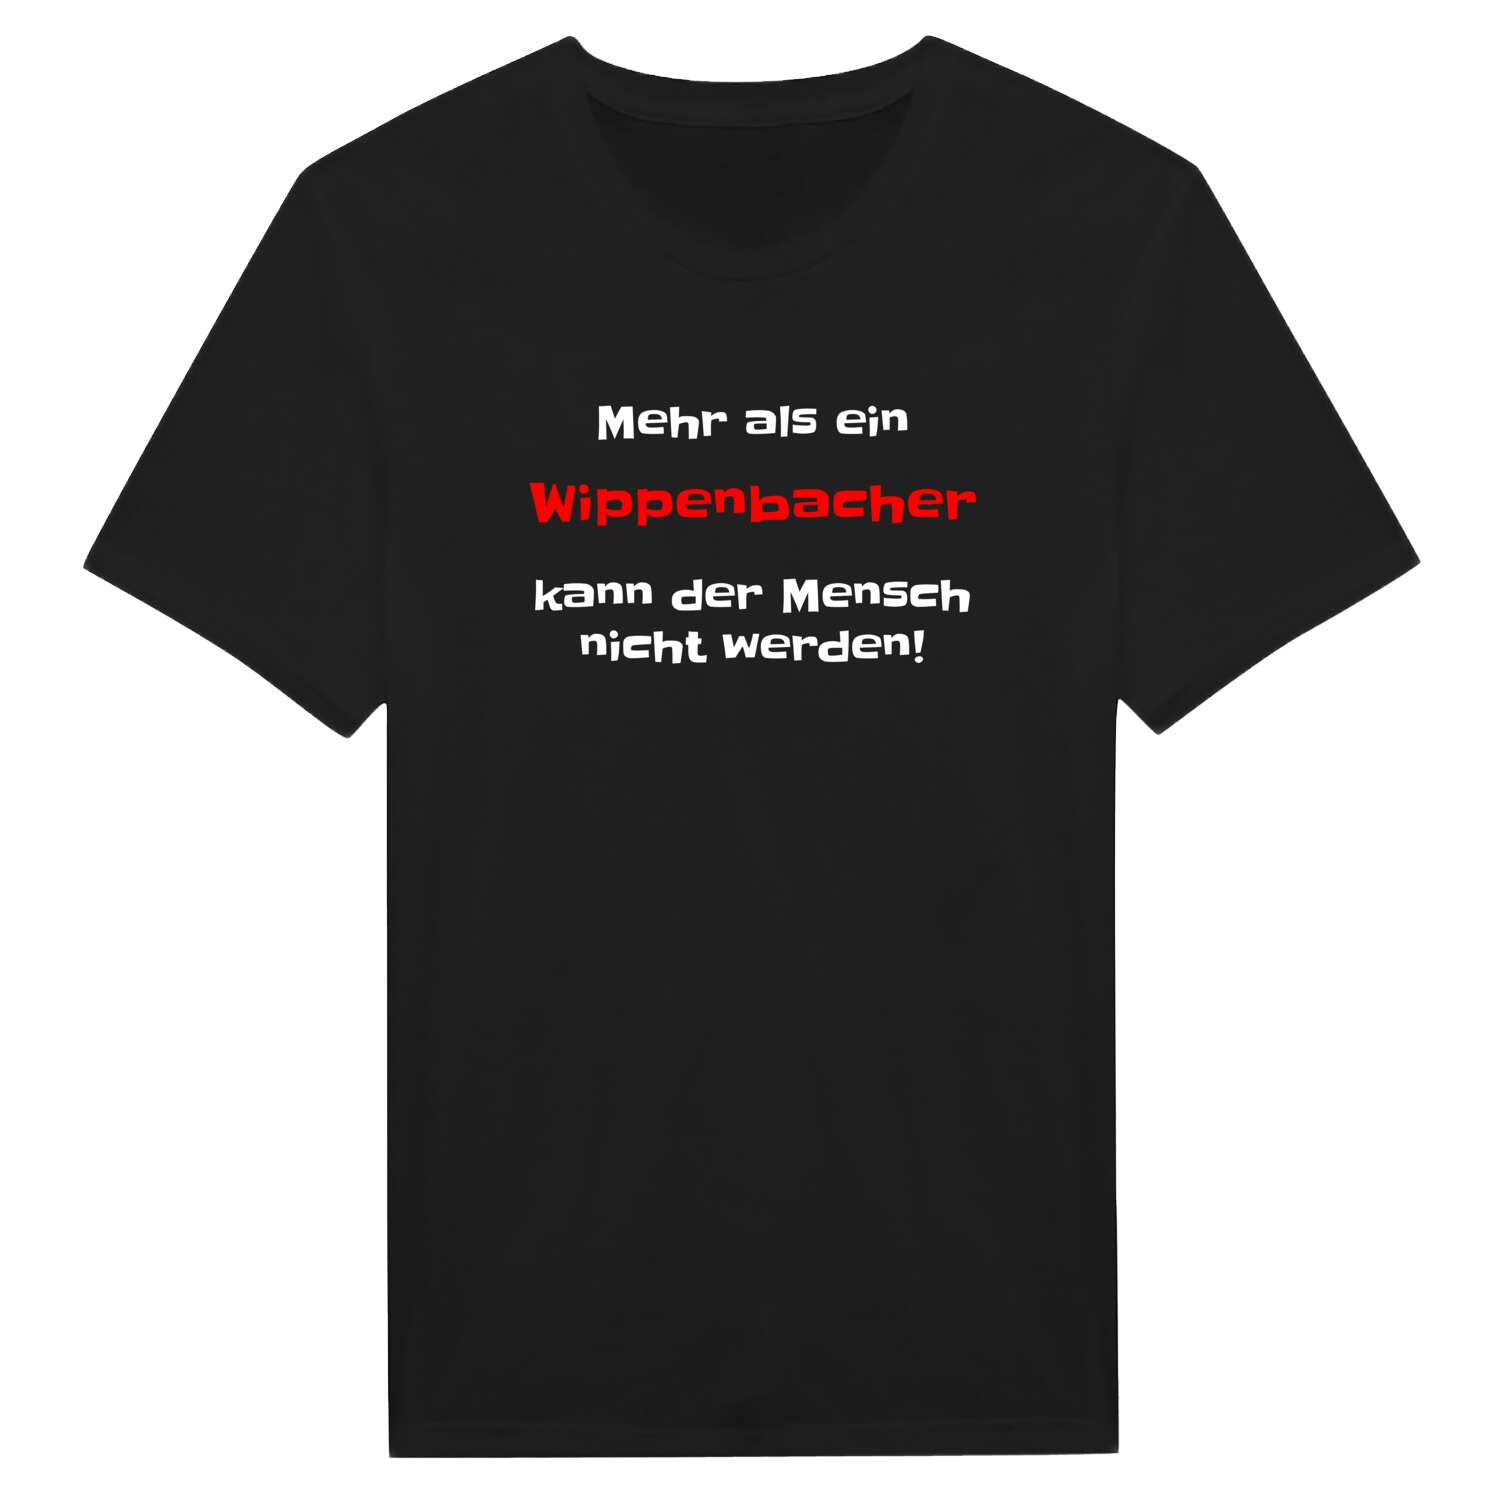 Wippenbach T-Shirt »Mehr als ein«